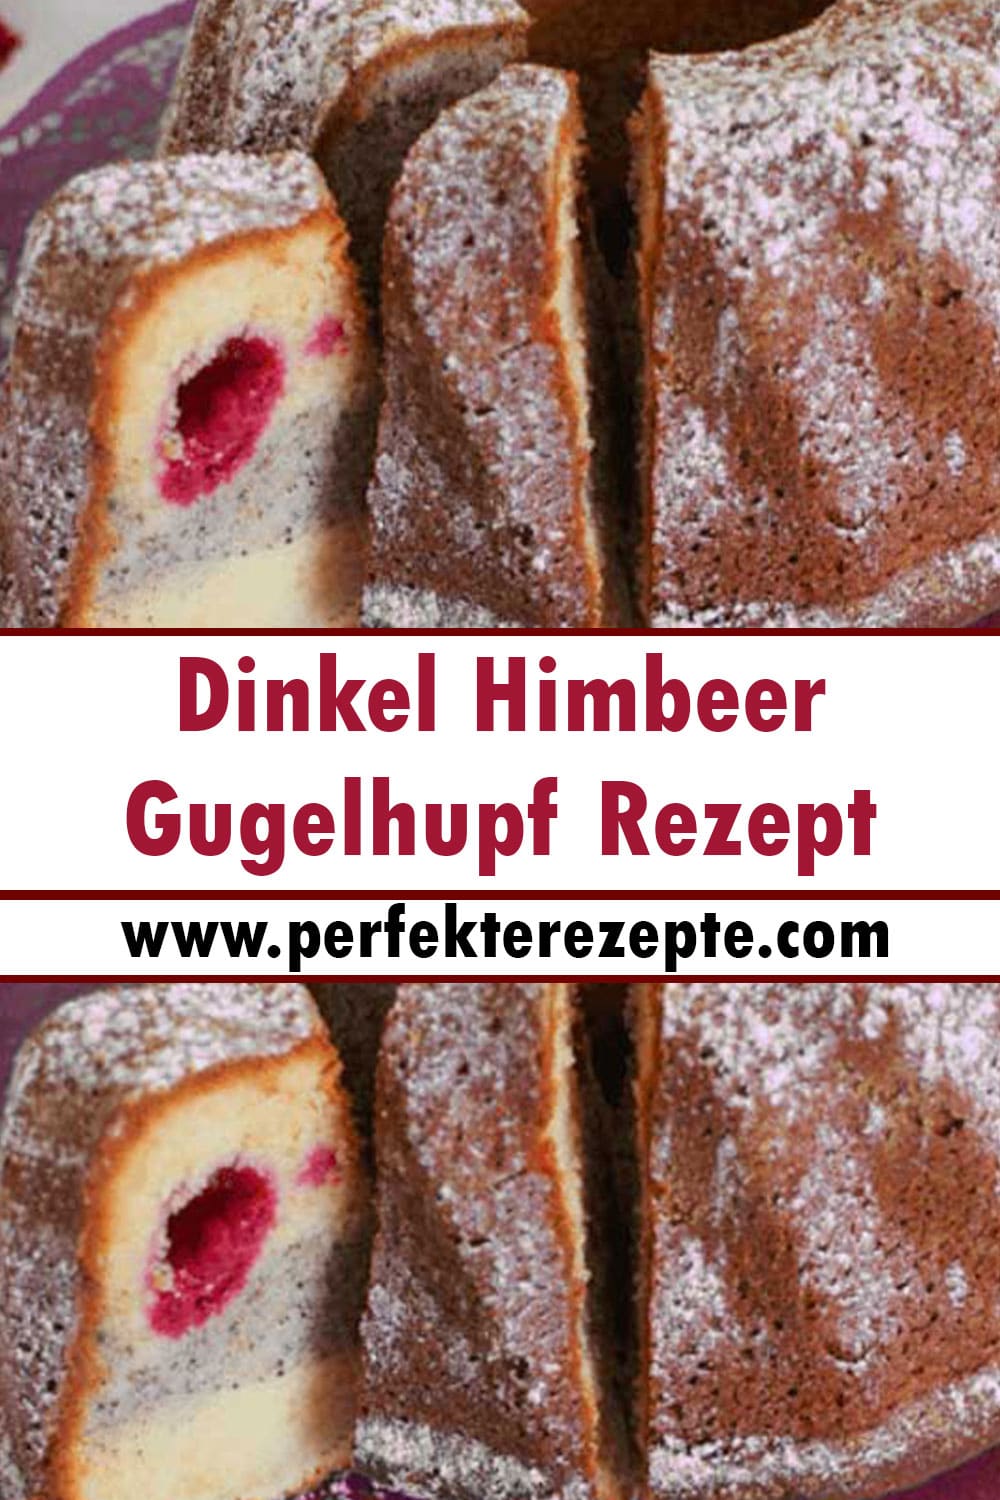 Dinkel Himbeer-Gugelhupf Rezept